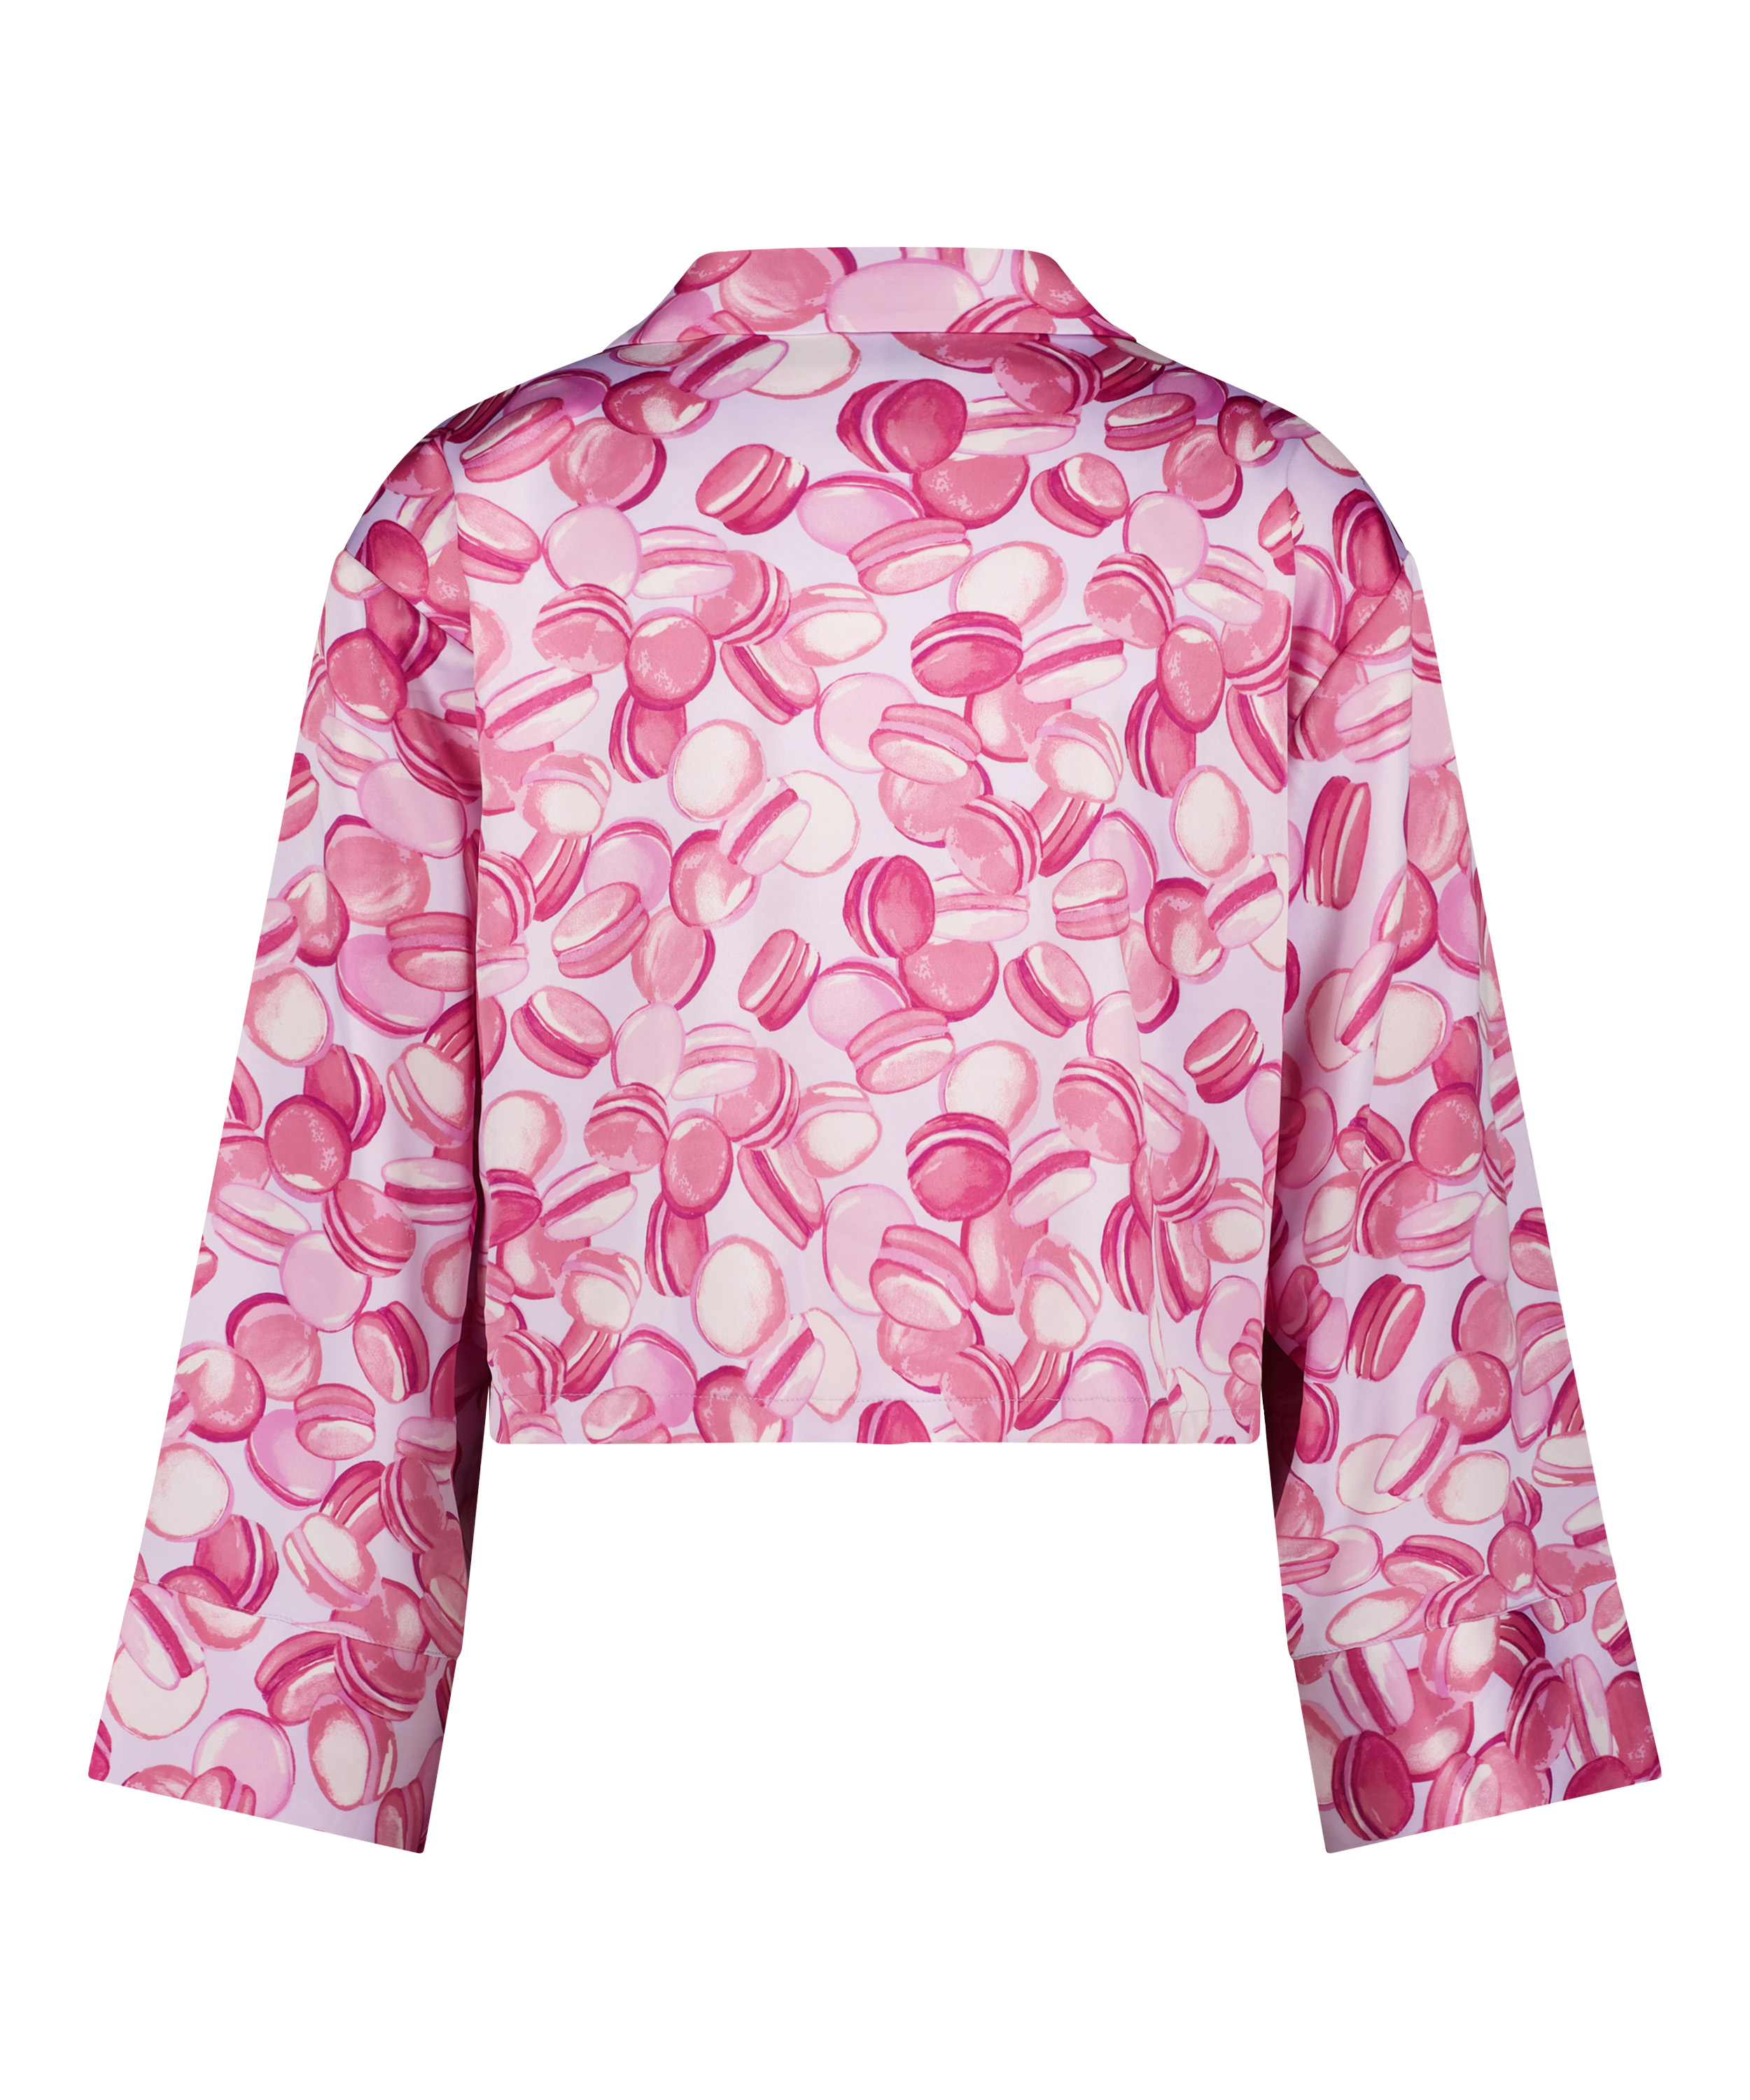 Satin Long-Sleeved Jacket, Pink, main